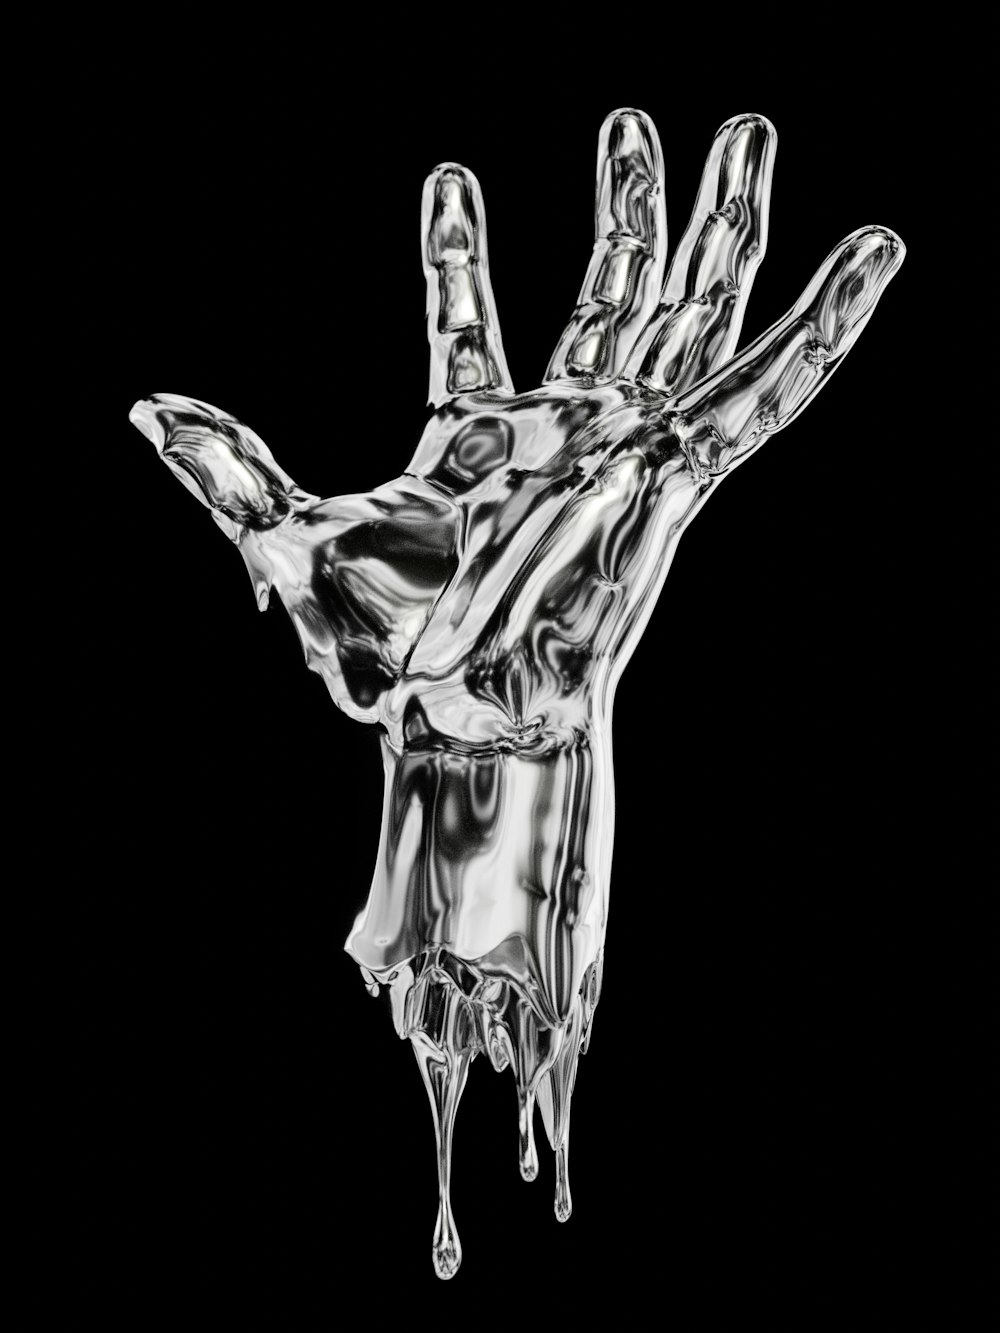 Una foto en blanco y negro de una mano goteando